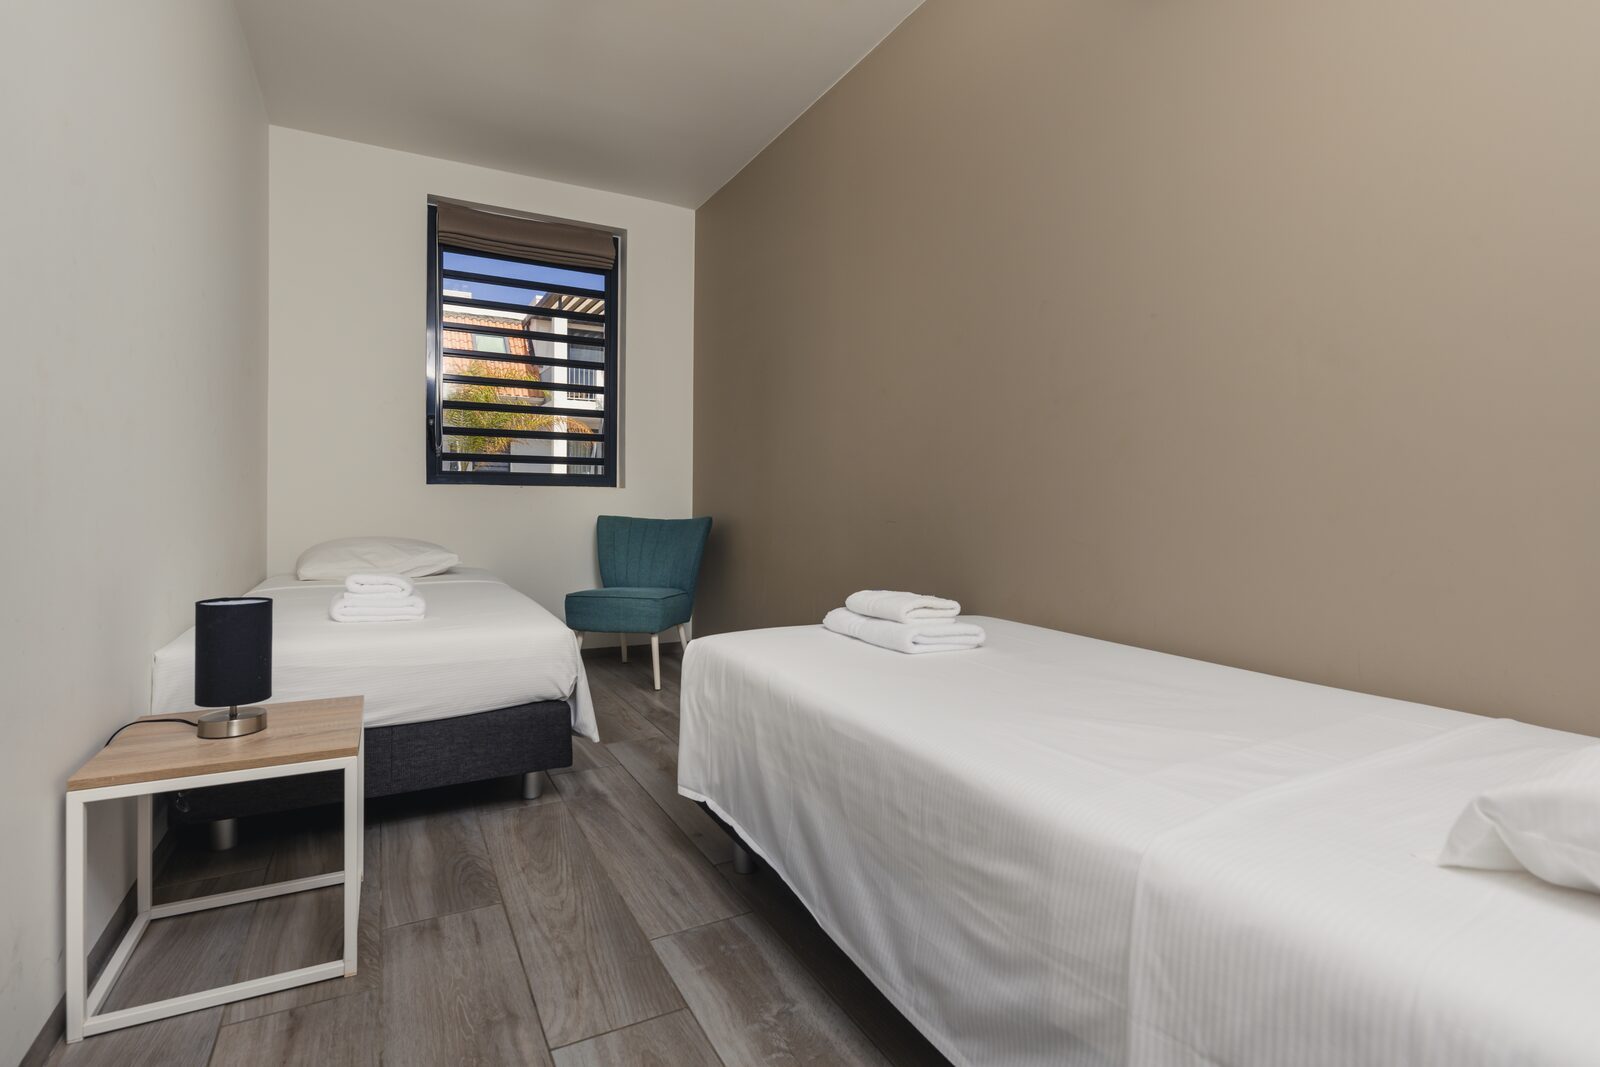 O Resort Bonaire oferece quartos espaçosos com acesso à varanda. Veja os nossos alojamentos disponíveis!